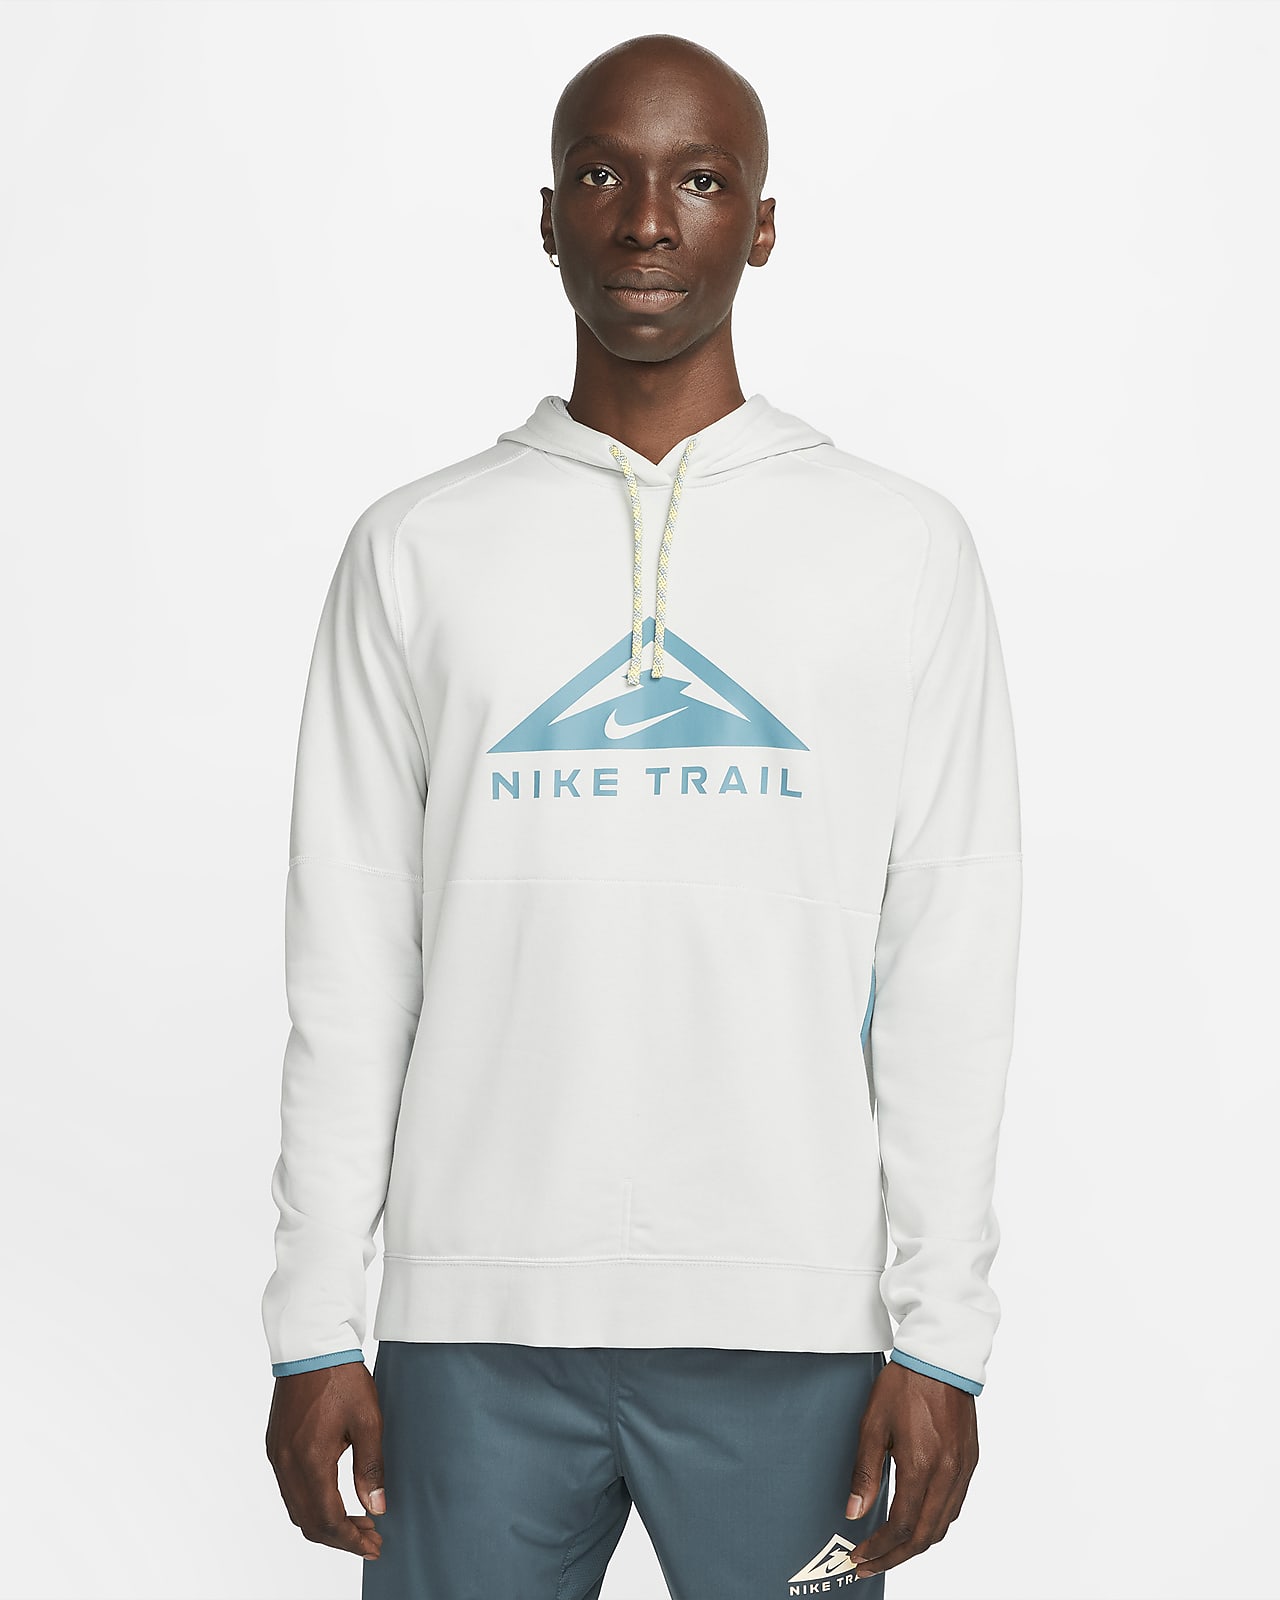 Pullover Trail-Running Hoodie. Nike LU